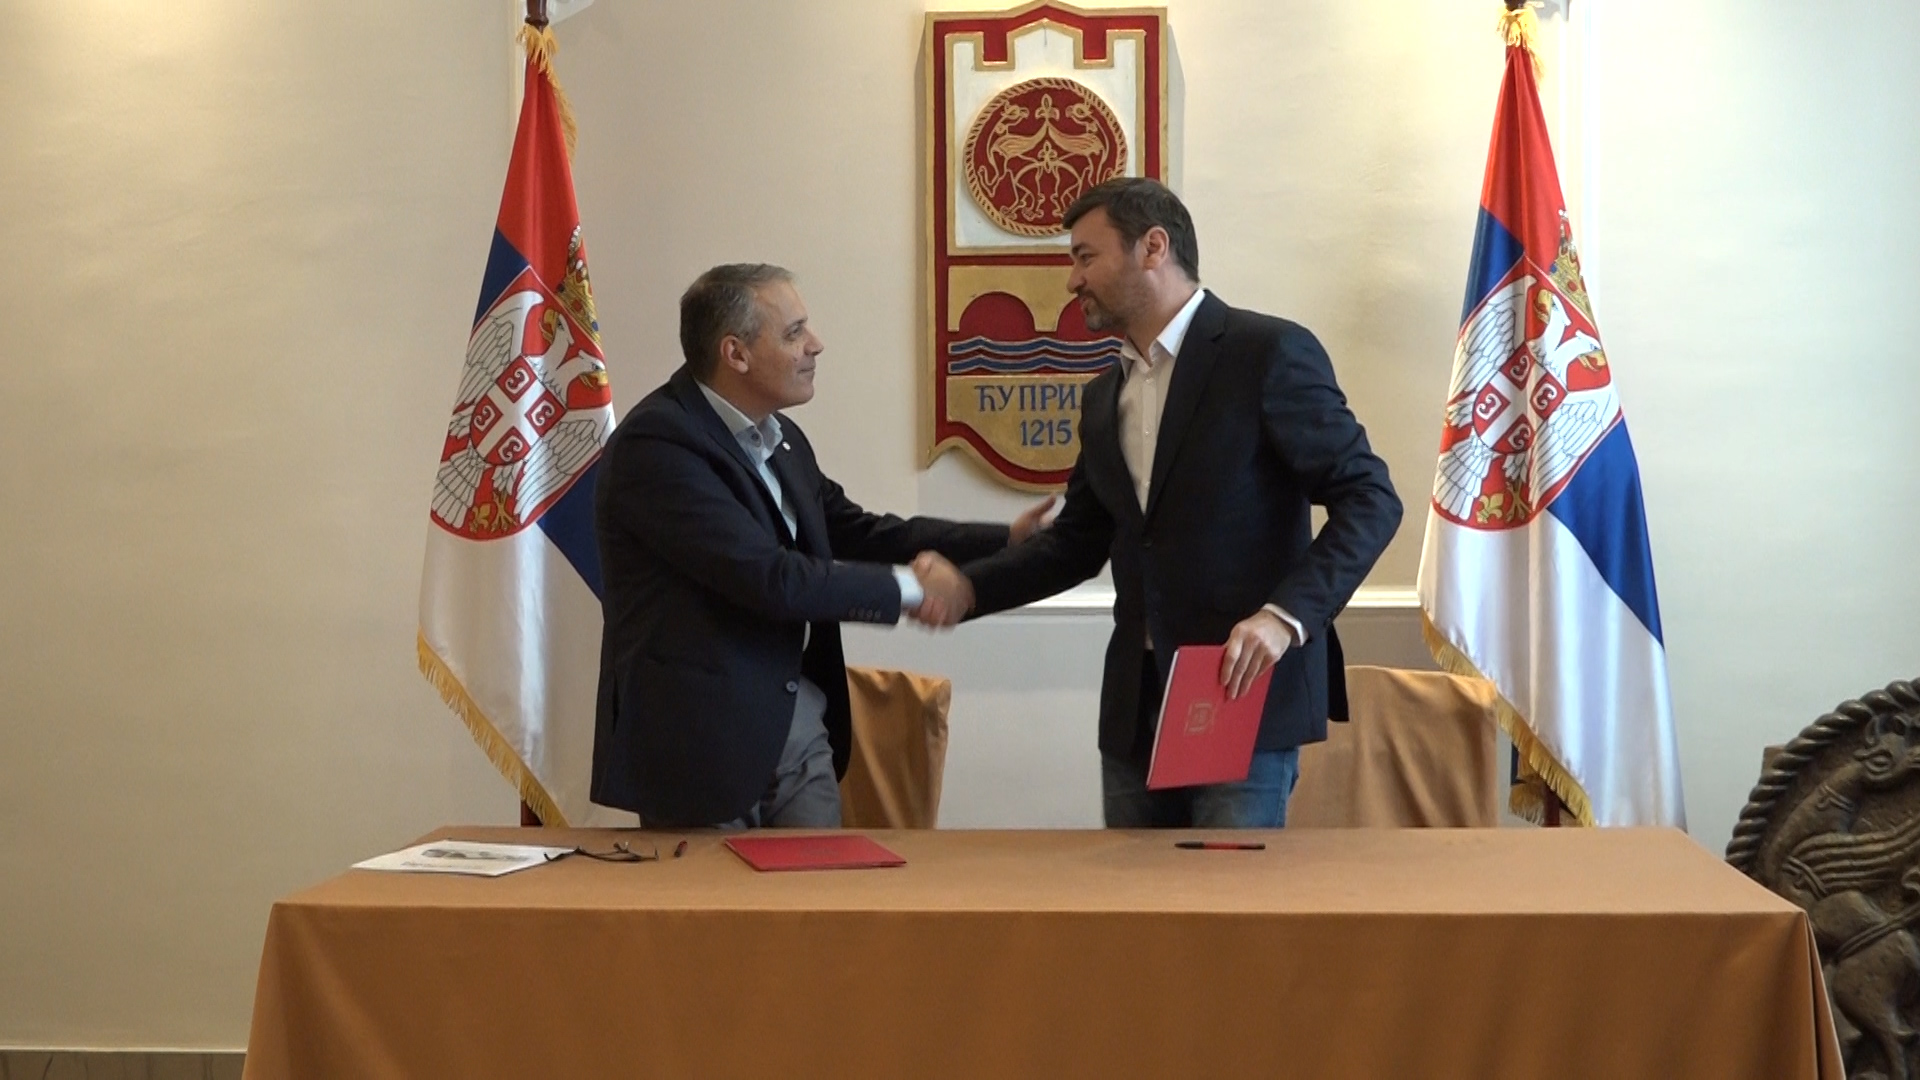 Potpisivanje ugovora o koncesiji između Opštine Ćuprija i Privrednog društva Eurolin iz Paraćina